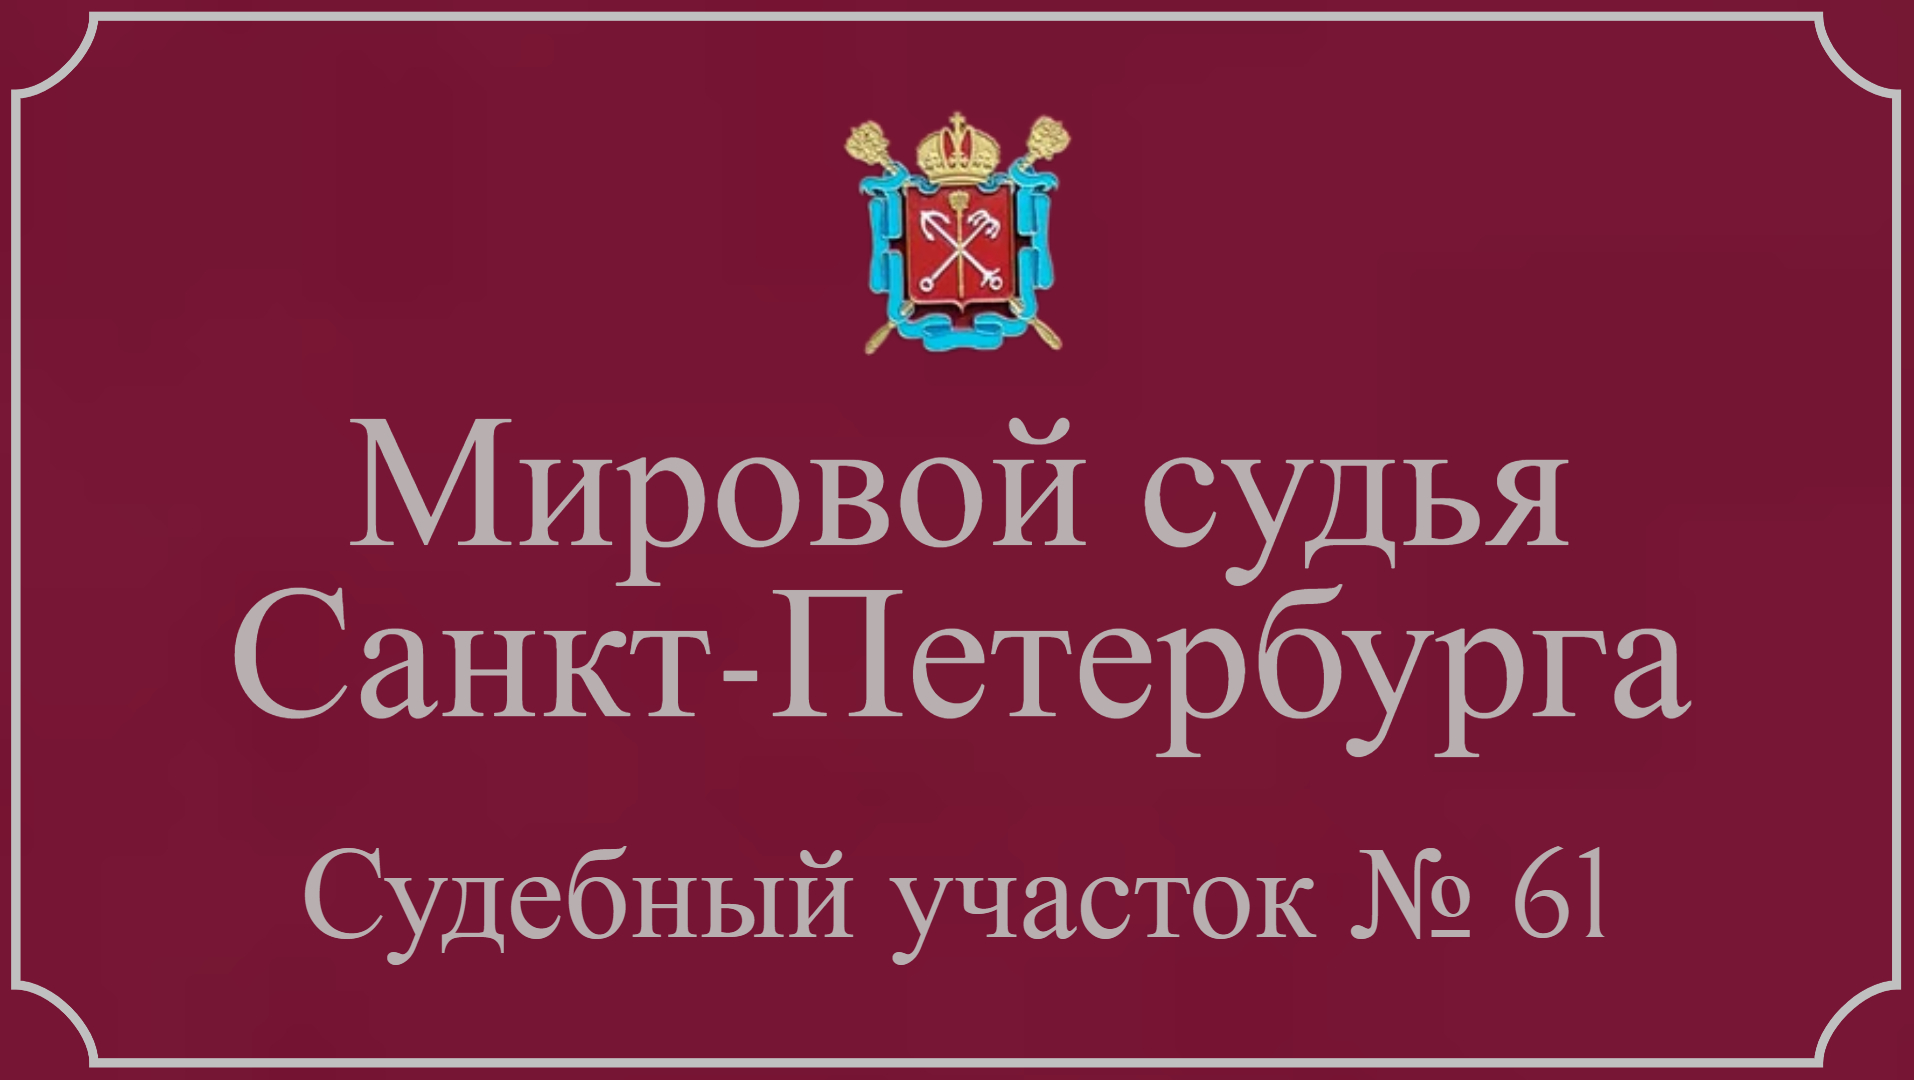 Информация по 61 судебному участку в Санкт-Петербурге.